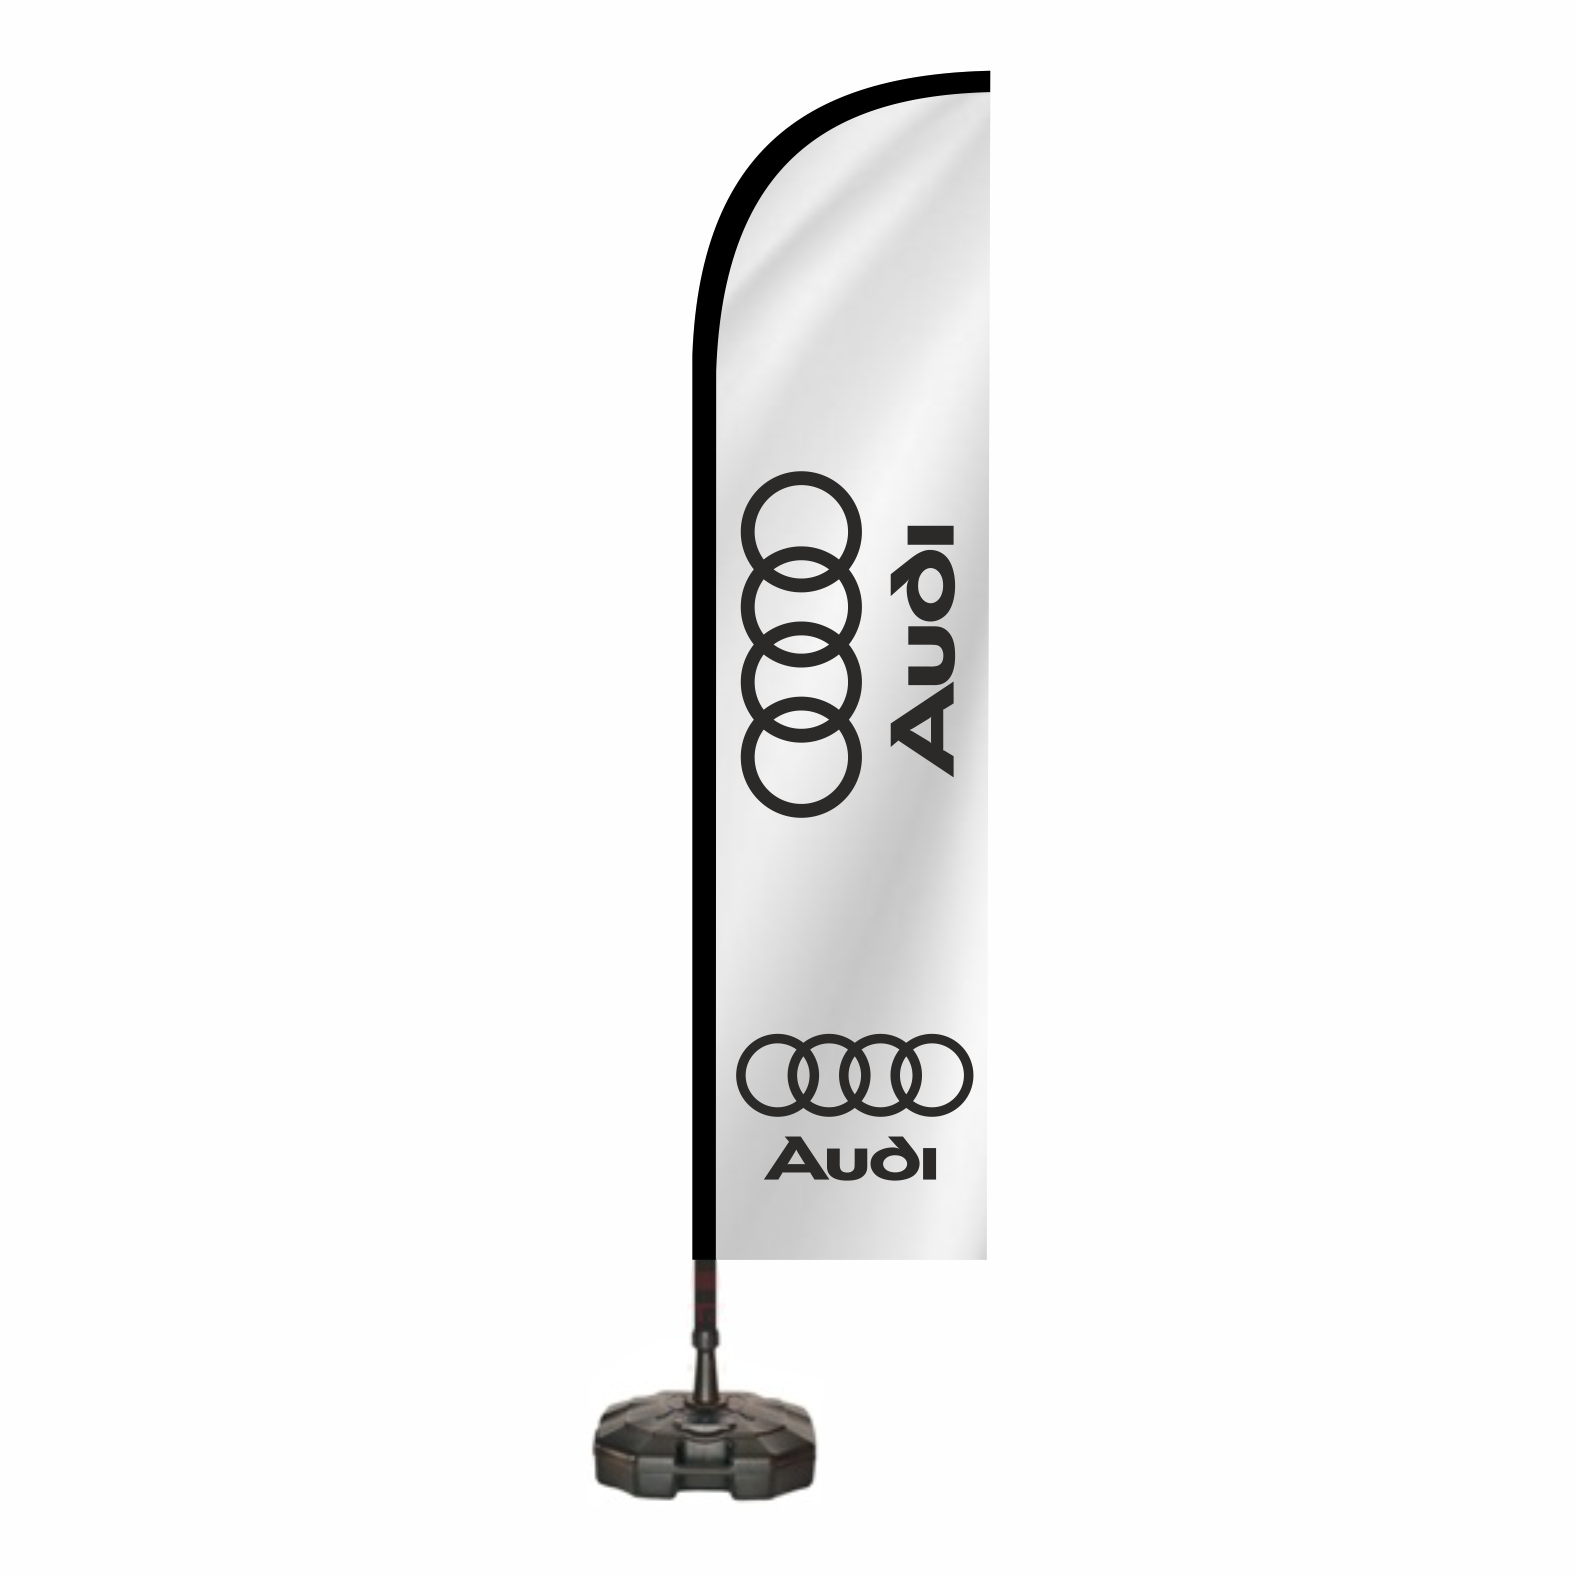 Audi Reklam Bayra retimi ve Sat